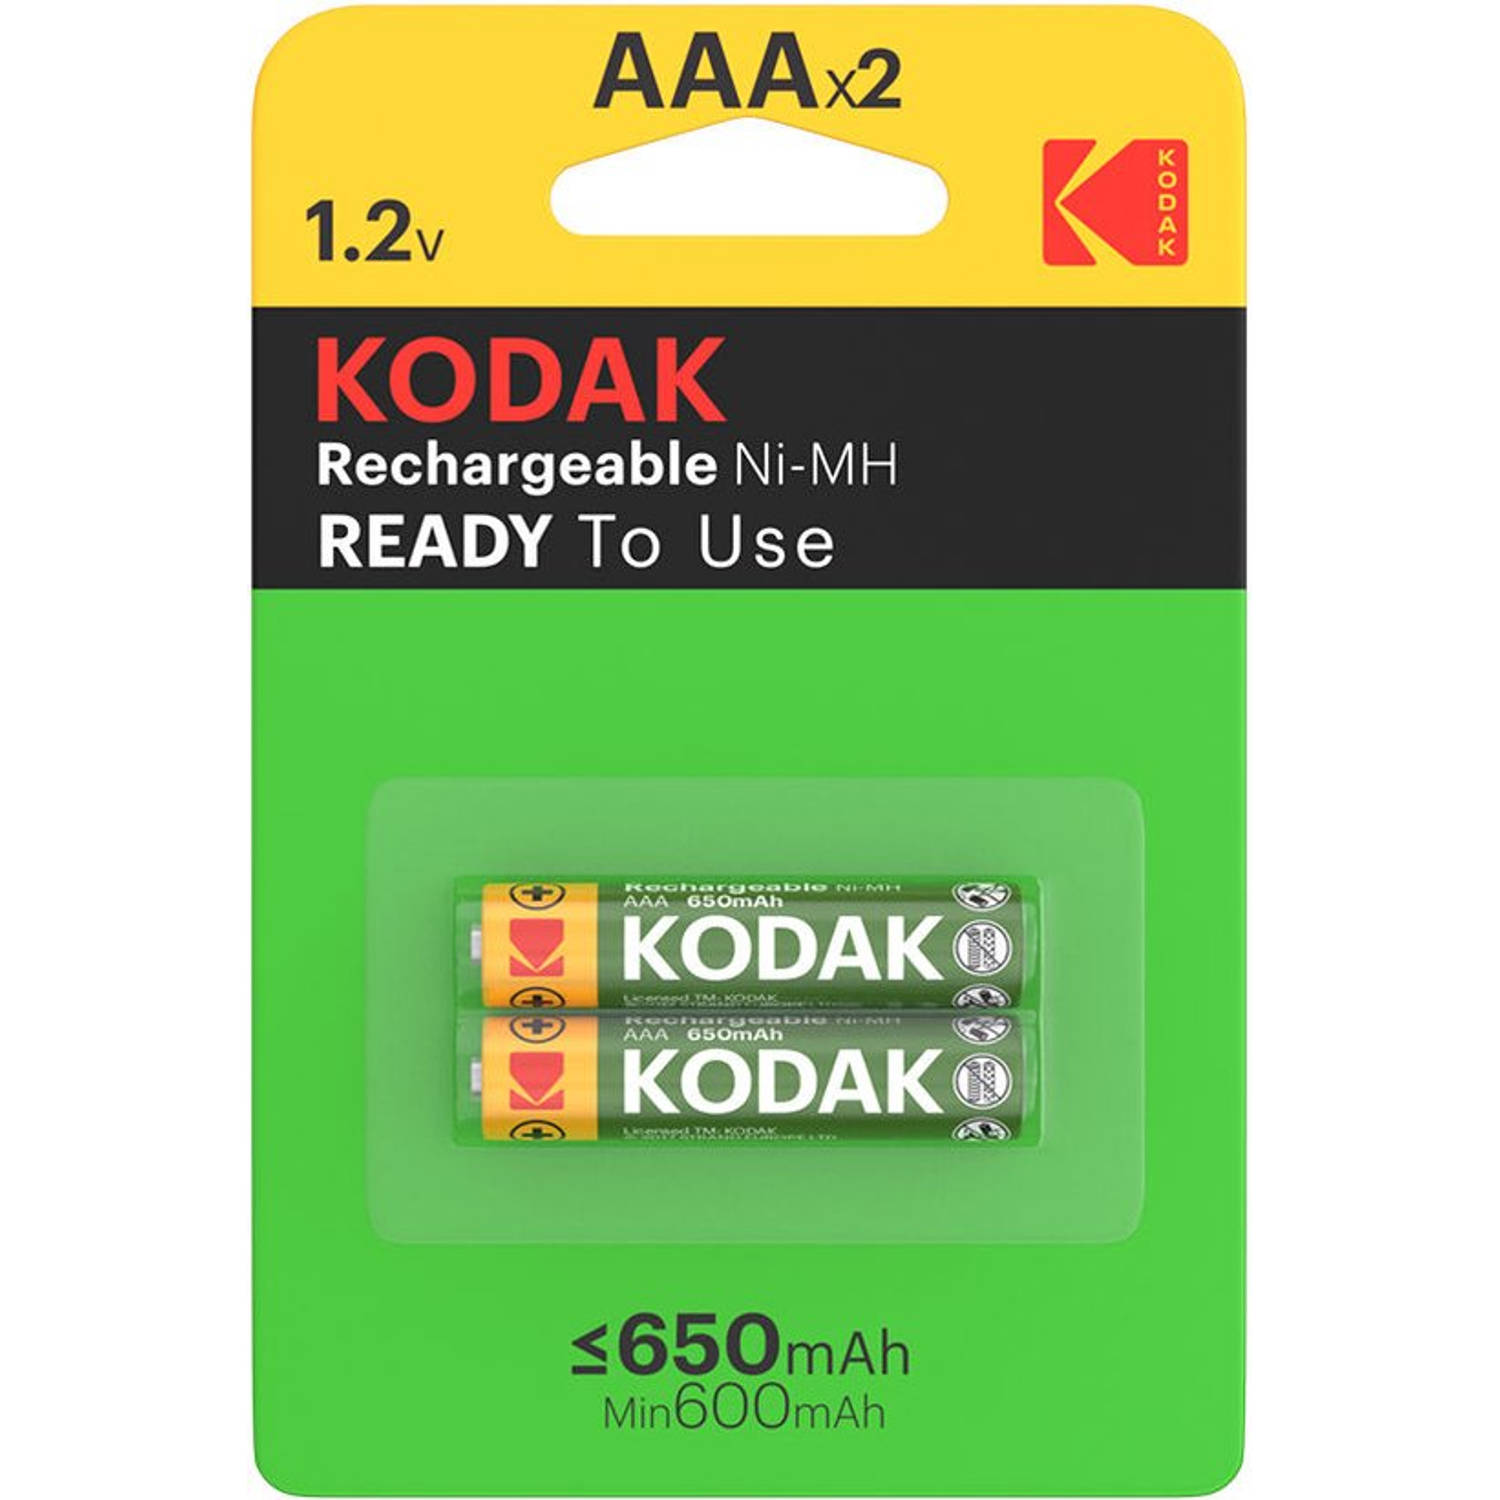 Kodak Rechargeable Ni-MH AAA battery 650mAh (2 pk)